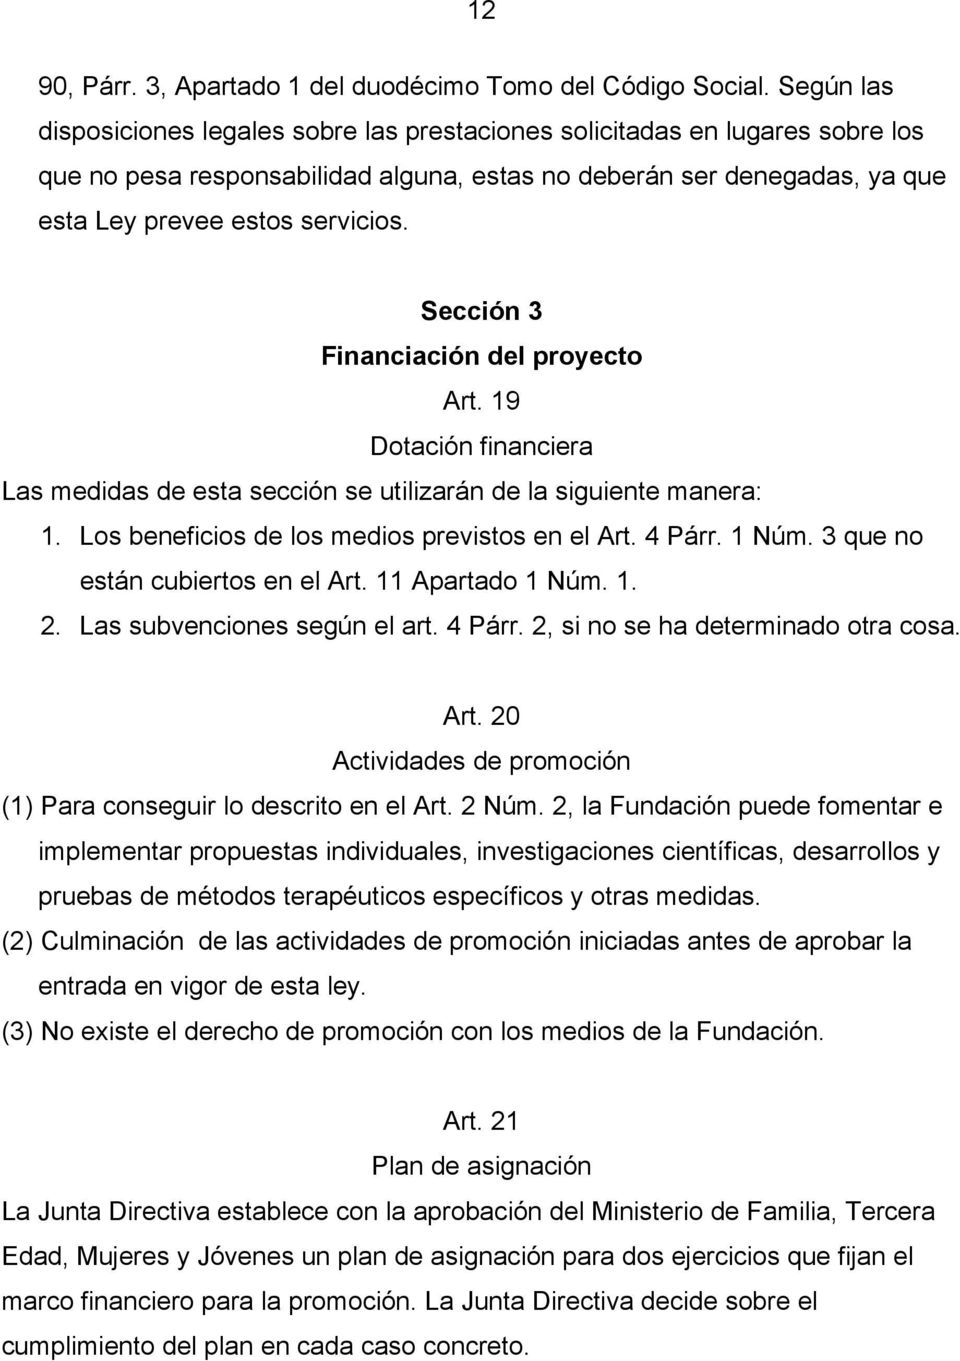 Sección 3 Financiación del proyecto Art. 19 Dotación financiera Las medidas de esta sección se utilizarán de la siguiente manera: 1. Los beneficios de los medios previstos en el Art. 4 Párr. 1 Núm.